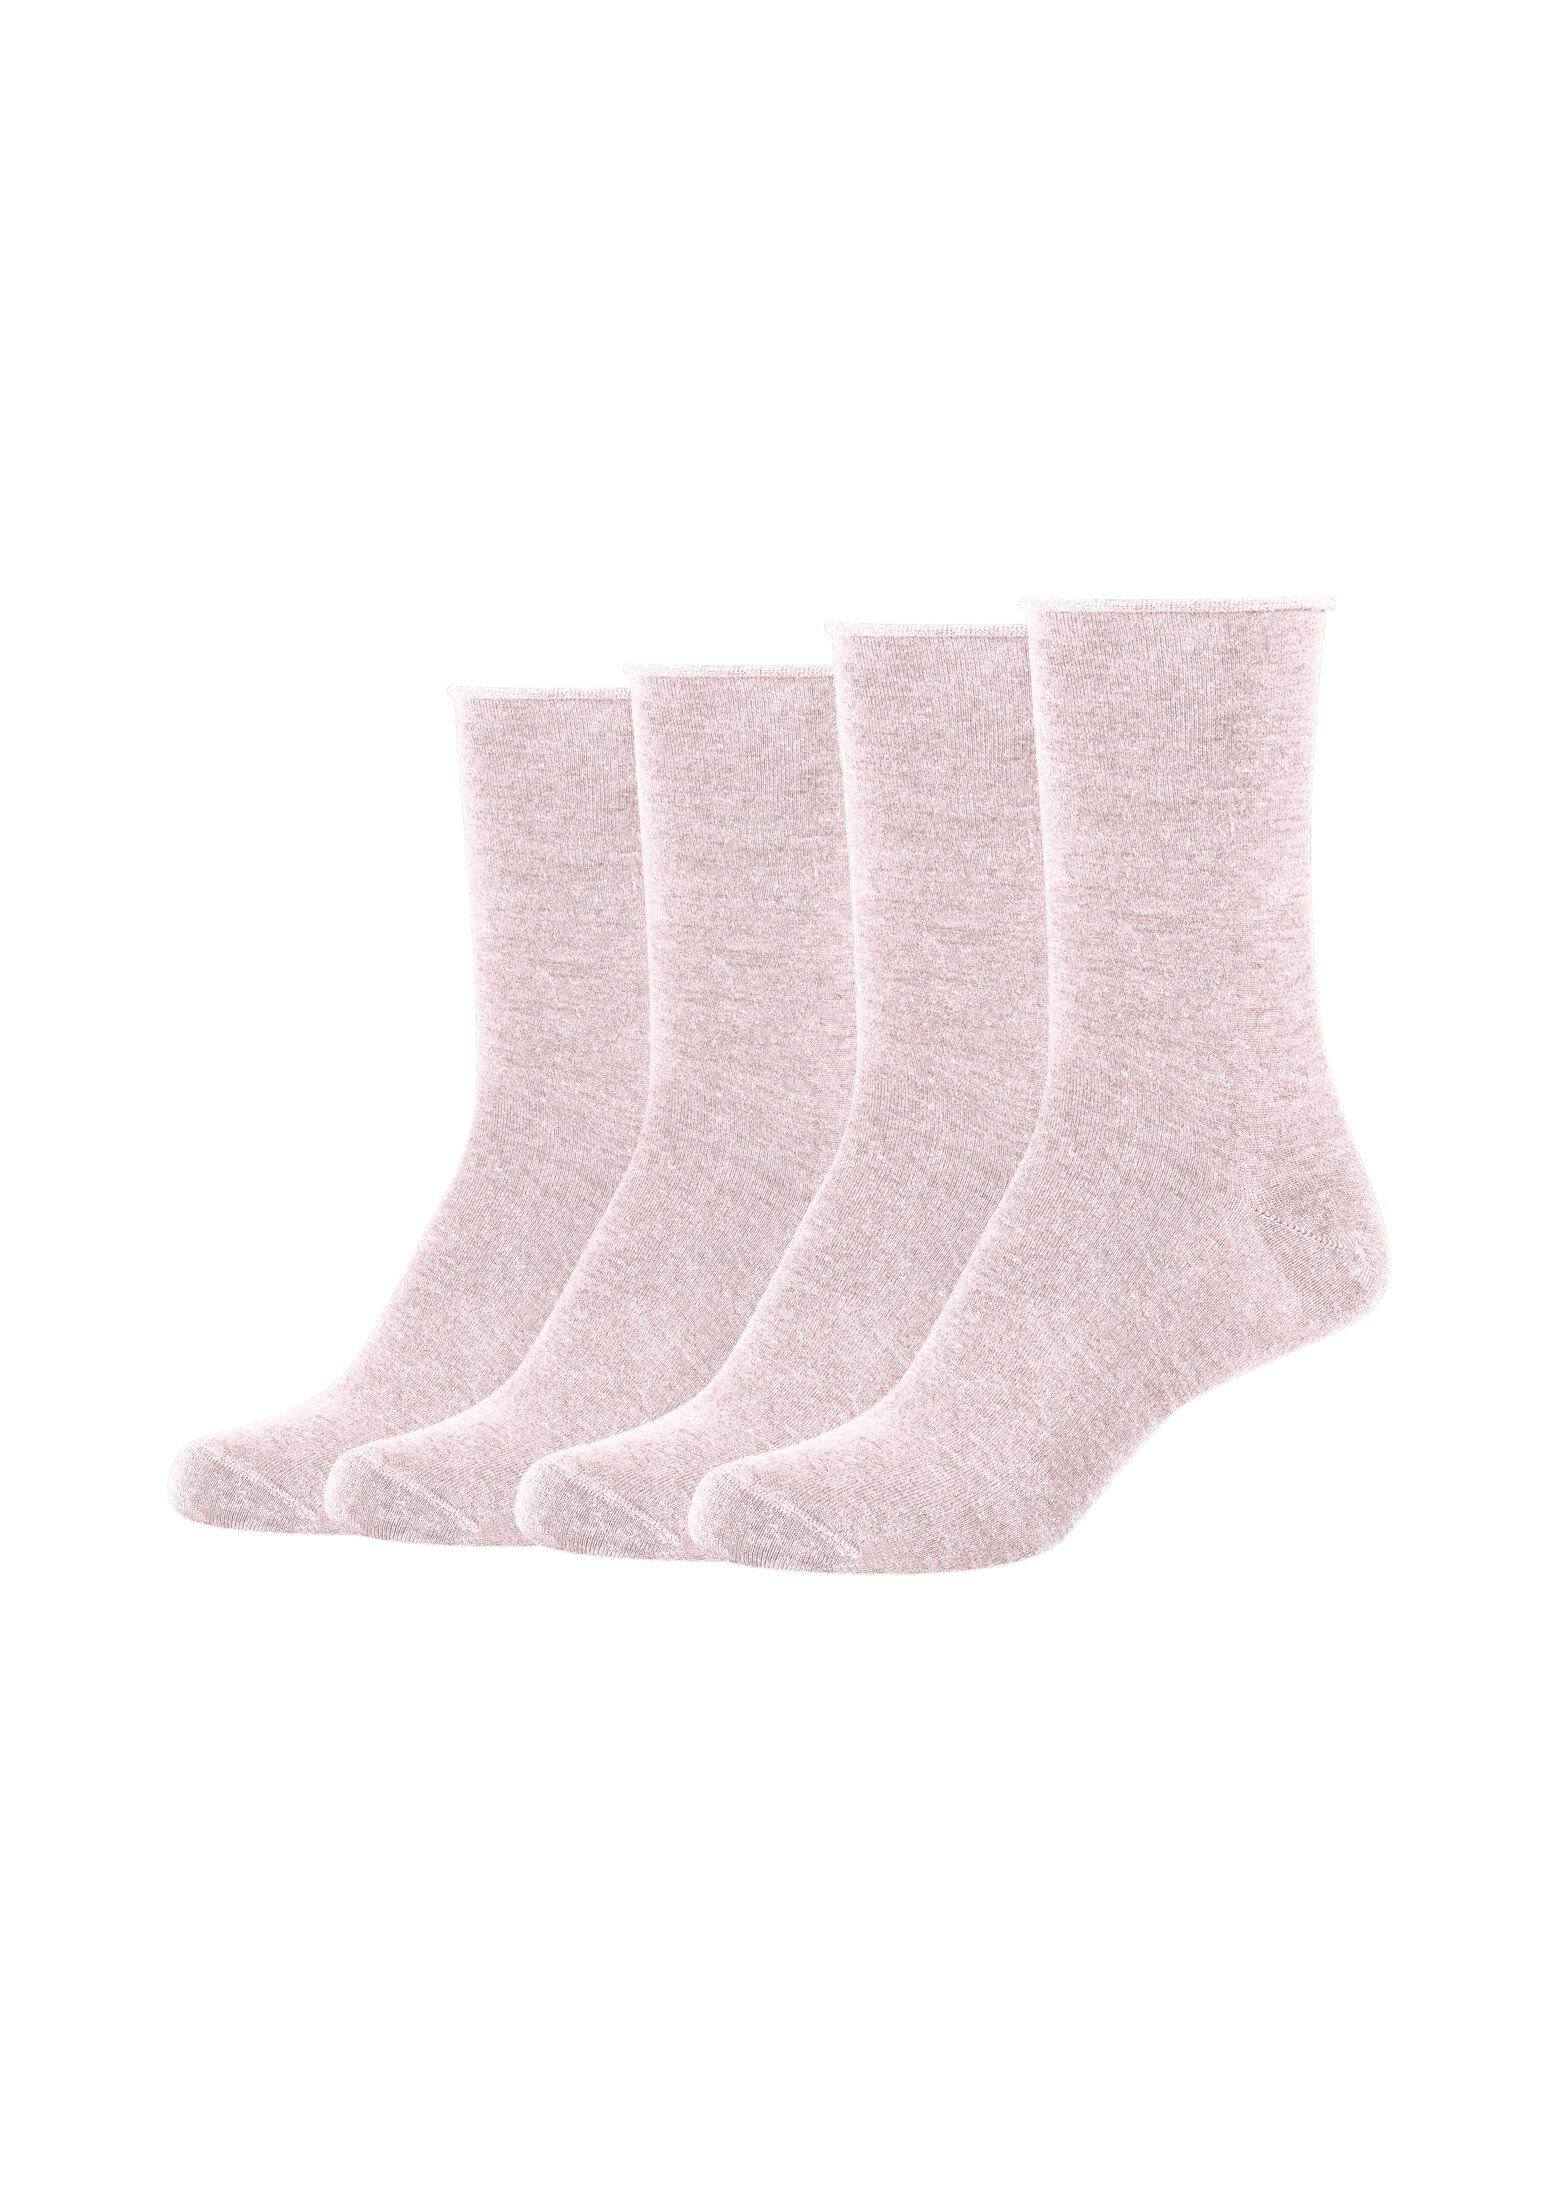 s.Oliver Socken Socken 4er melange Pack rosé